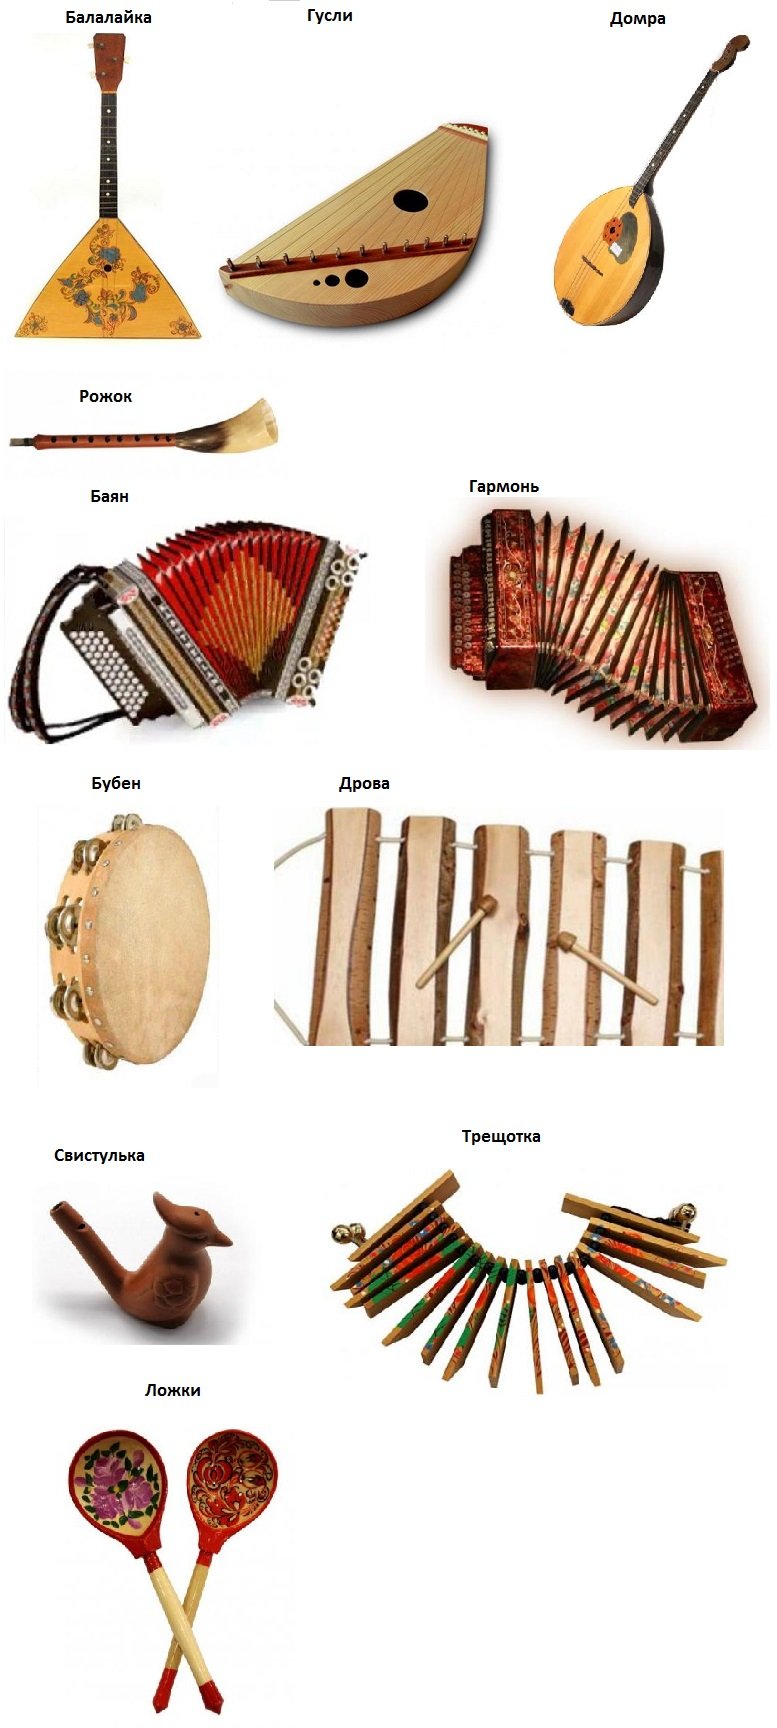 Русские народные музыкальные инструменты – Виртуозы